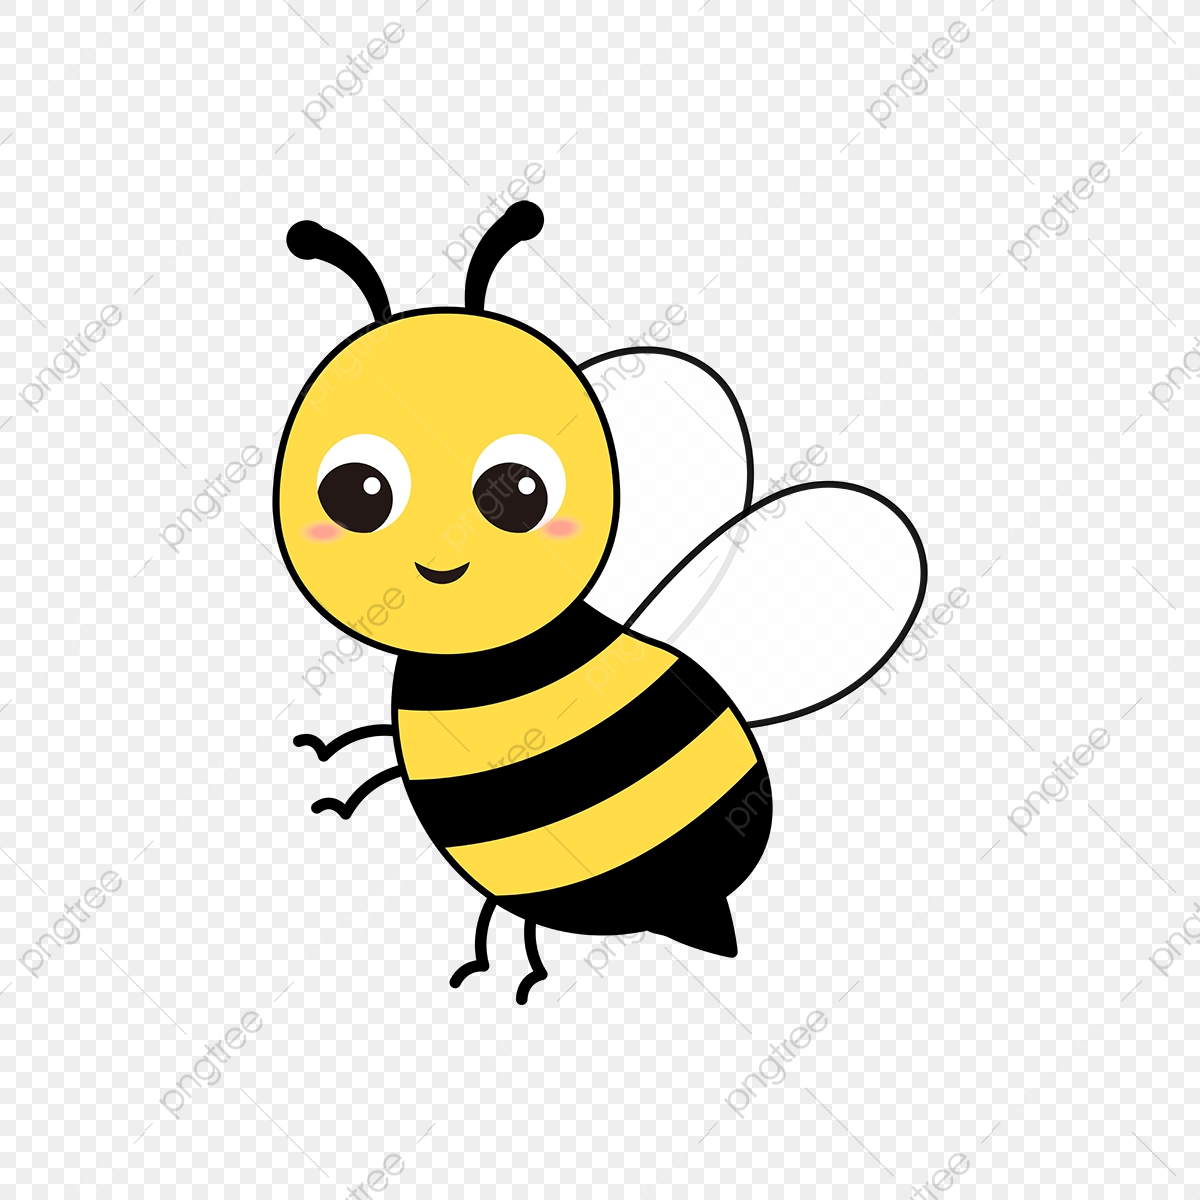 Cuộc sống của chúng ta đôi khi khô khan và cần những trò chơi giải trí. Hãy đến với Quizizz và thử thách khả năng giải đố của chính mình qua các câu đố liên quan đến con vật. Đặc biệt, ảnh con ong cute sẽ giúp bạn có một trải nghiệm thú vị và giải toả căng thẳng một cách hiệu quả.